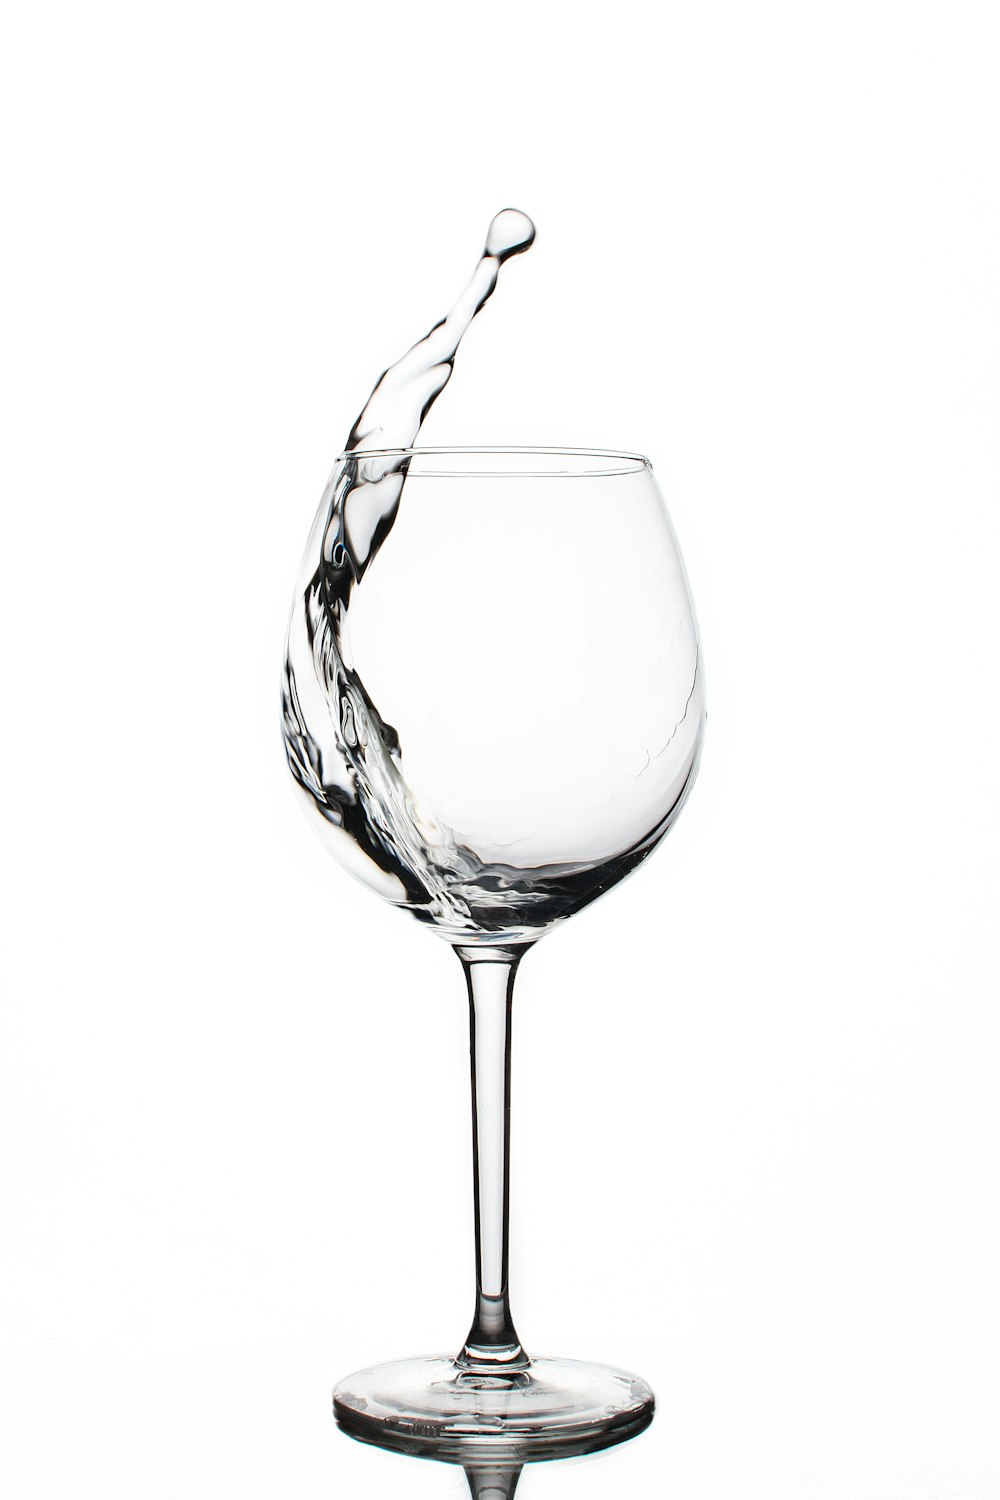 liquide dans un verre à vin clair photo – Photo Eau de verre ...